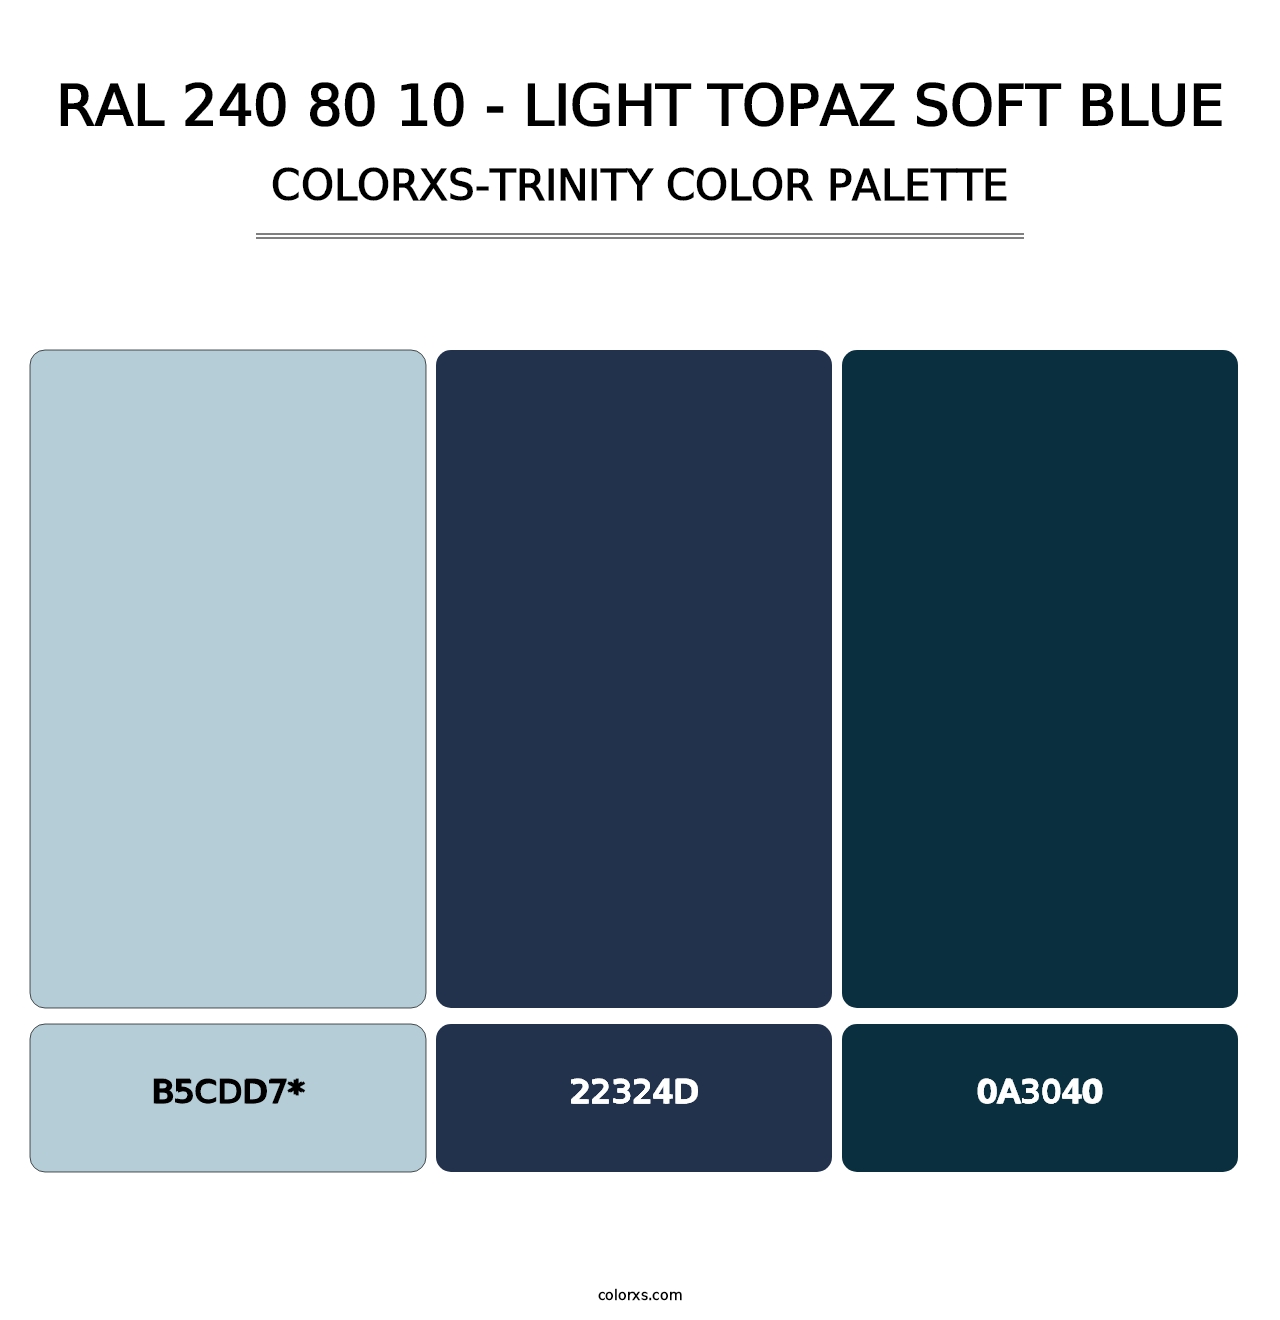 RAL 240 80 10 - Light Topaz Soft Blue - Colorxs Trinity Palette